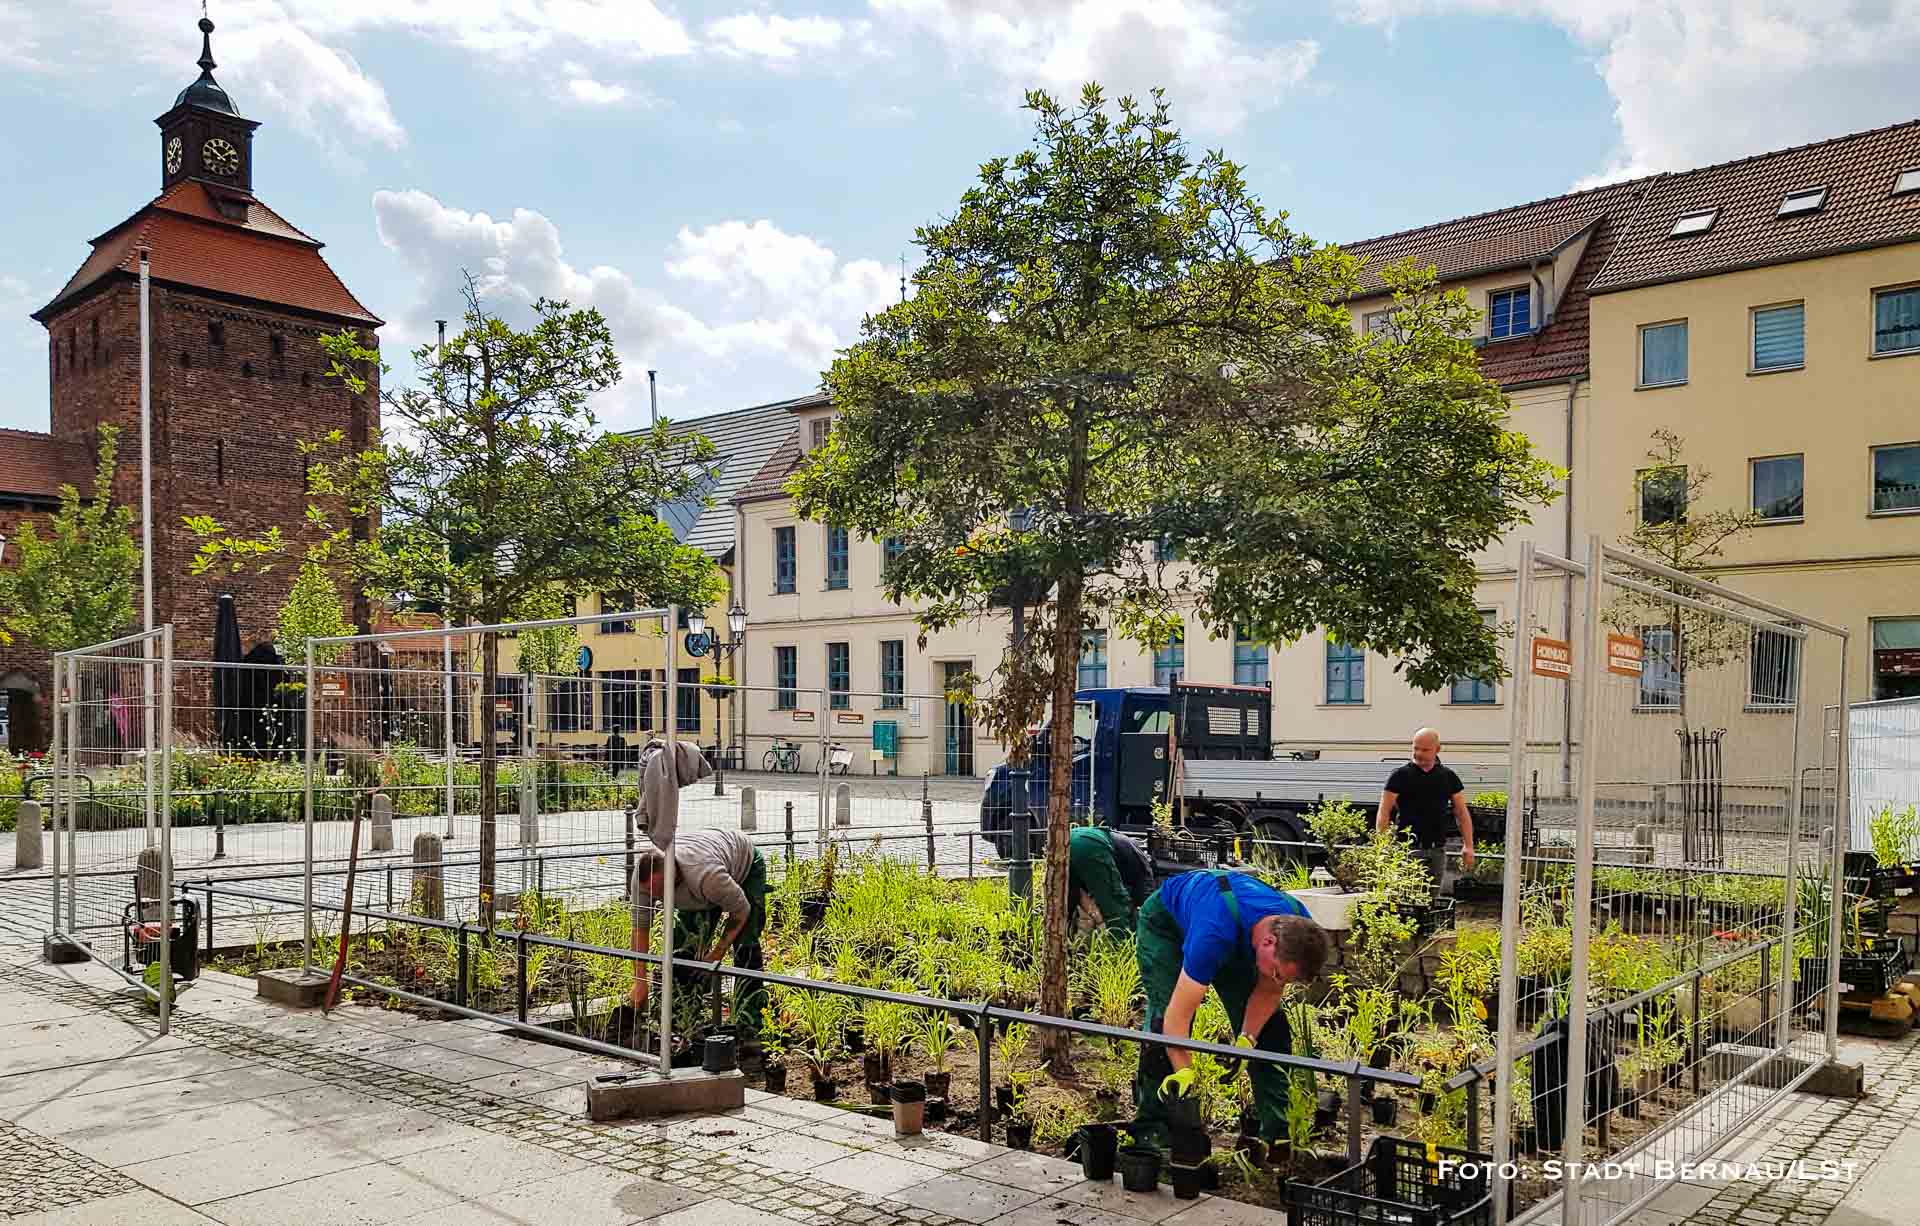 Bernau: Statt Pflastersteine viel Grün und eine Sitzbank zum Verweilen